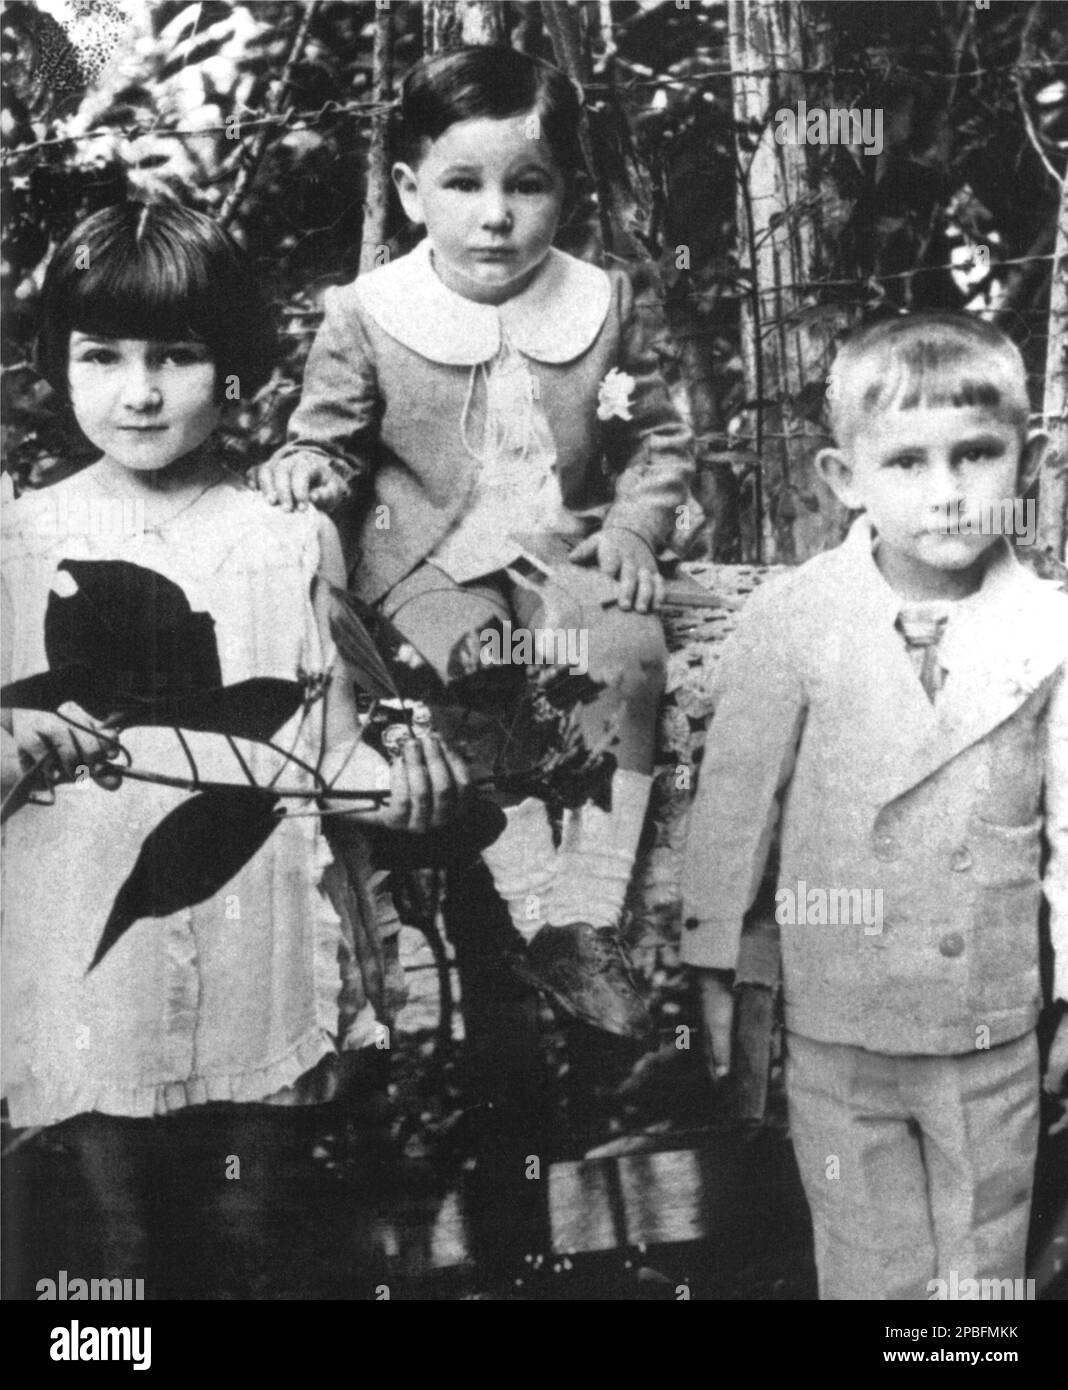 1929 , CUBA :  The cuban politician  rivolutionarian FIDEL CASTRO Ruz ( born August 13, 1926 ) when was a child  aged 3.  In this photo with his sister ANGELITA ( aged 6 ) and brother RAMON ( aged 4 ) - POLITICO - POLITICA - POLITIC - SOCIALIST - SOCIALISMO - SOCIALISM  - COMUNISTA - COMUNISMO - COMMUNIST - COMMUNISM - foto storiche - foto storica  - arringa - comizio  - RIVOLUZIONE - REVOLUTION - RIVOLUZIONARIO -  personality when was young boy celebrity celebrities - personalities child children - celebrita' personalita' da giovane giovani bambino bambini ----  Archivio GBB Stock Photo